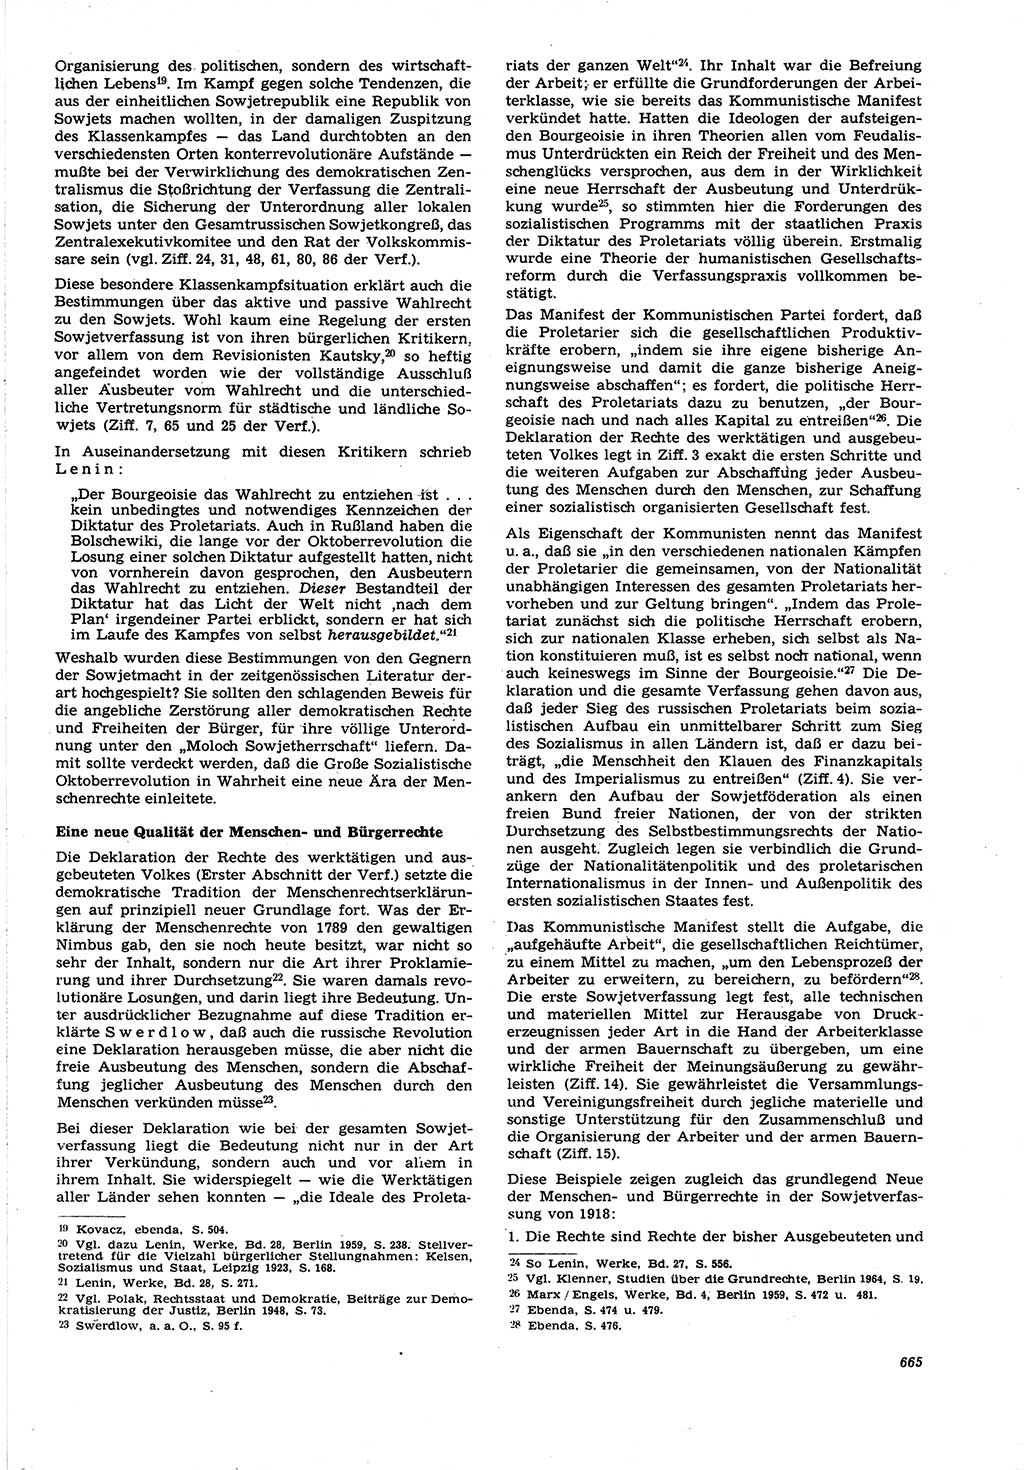 Neue Justiz (NJ), Zeitschrift für Recht und Rechtswissenschaft [Deutsche Demokratische Republik (DDR)], 21. Jahrgang 1967, Seite 665 (NJ DDR 1967, S. 665)